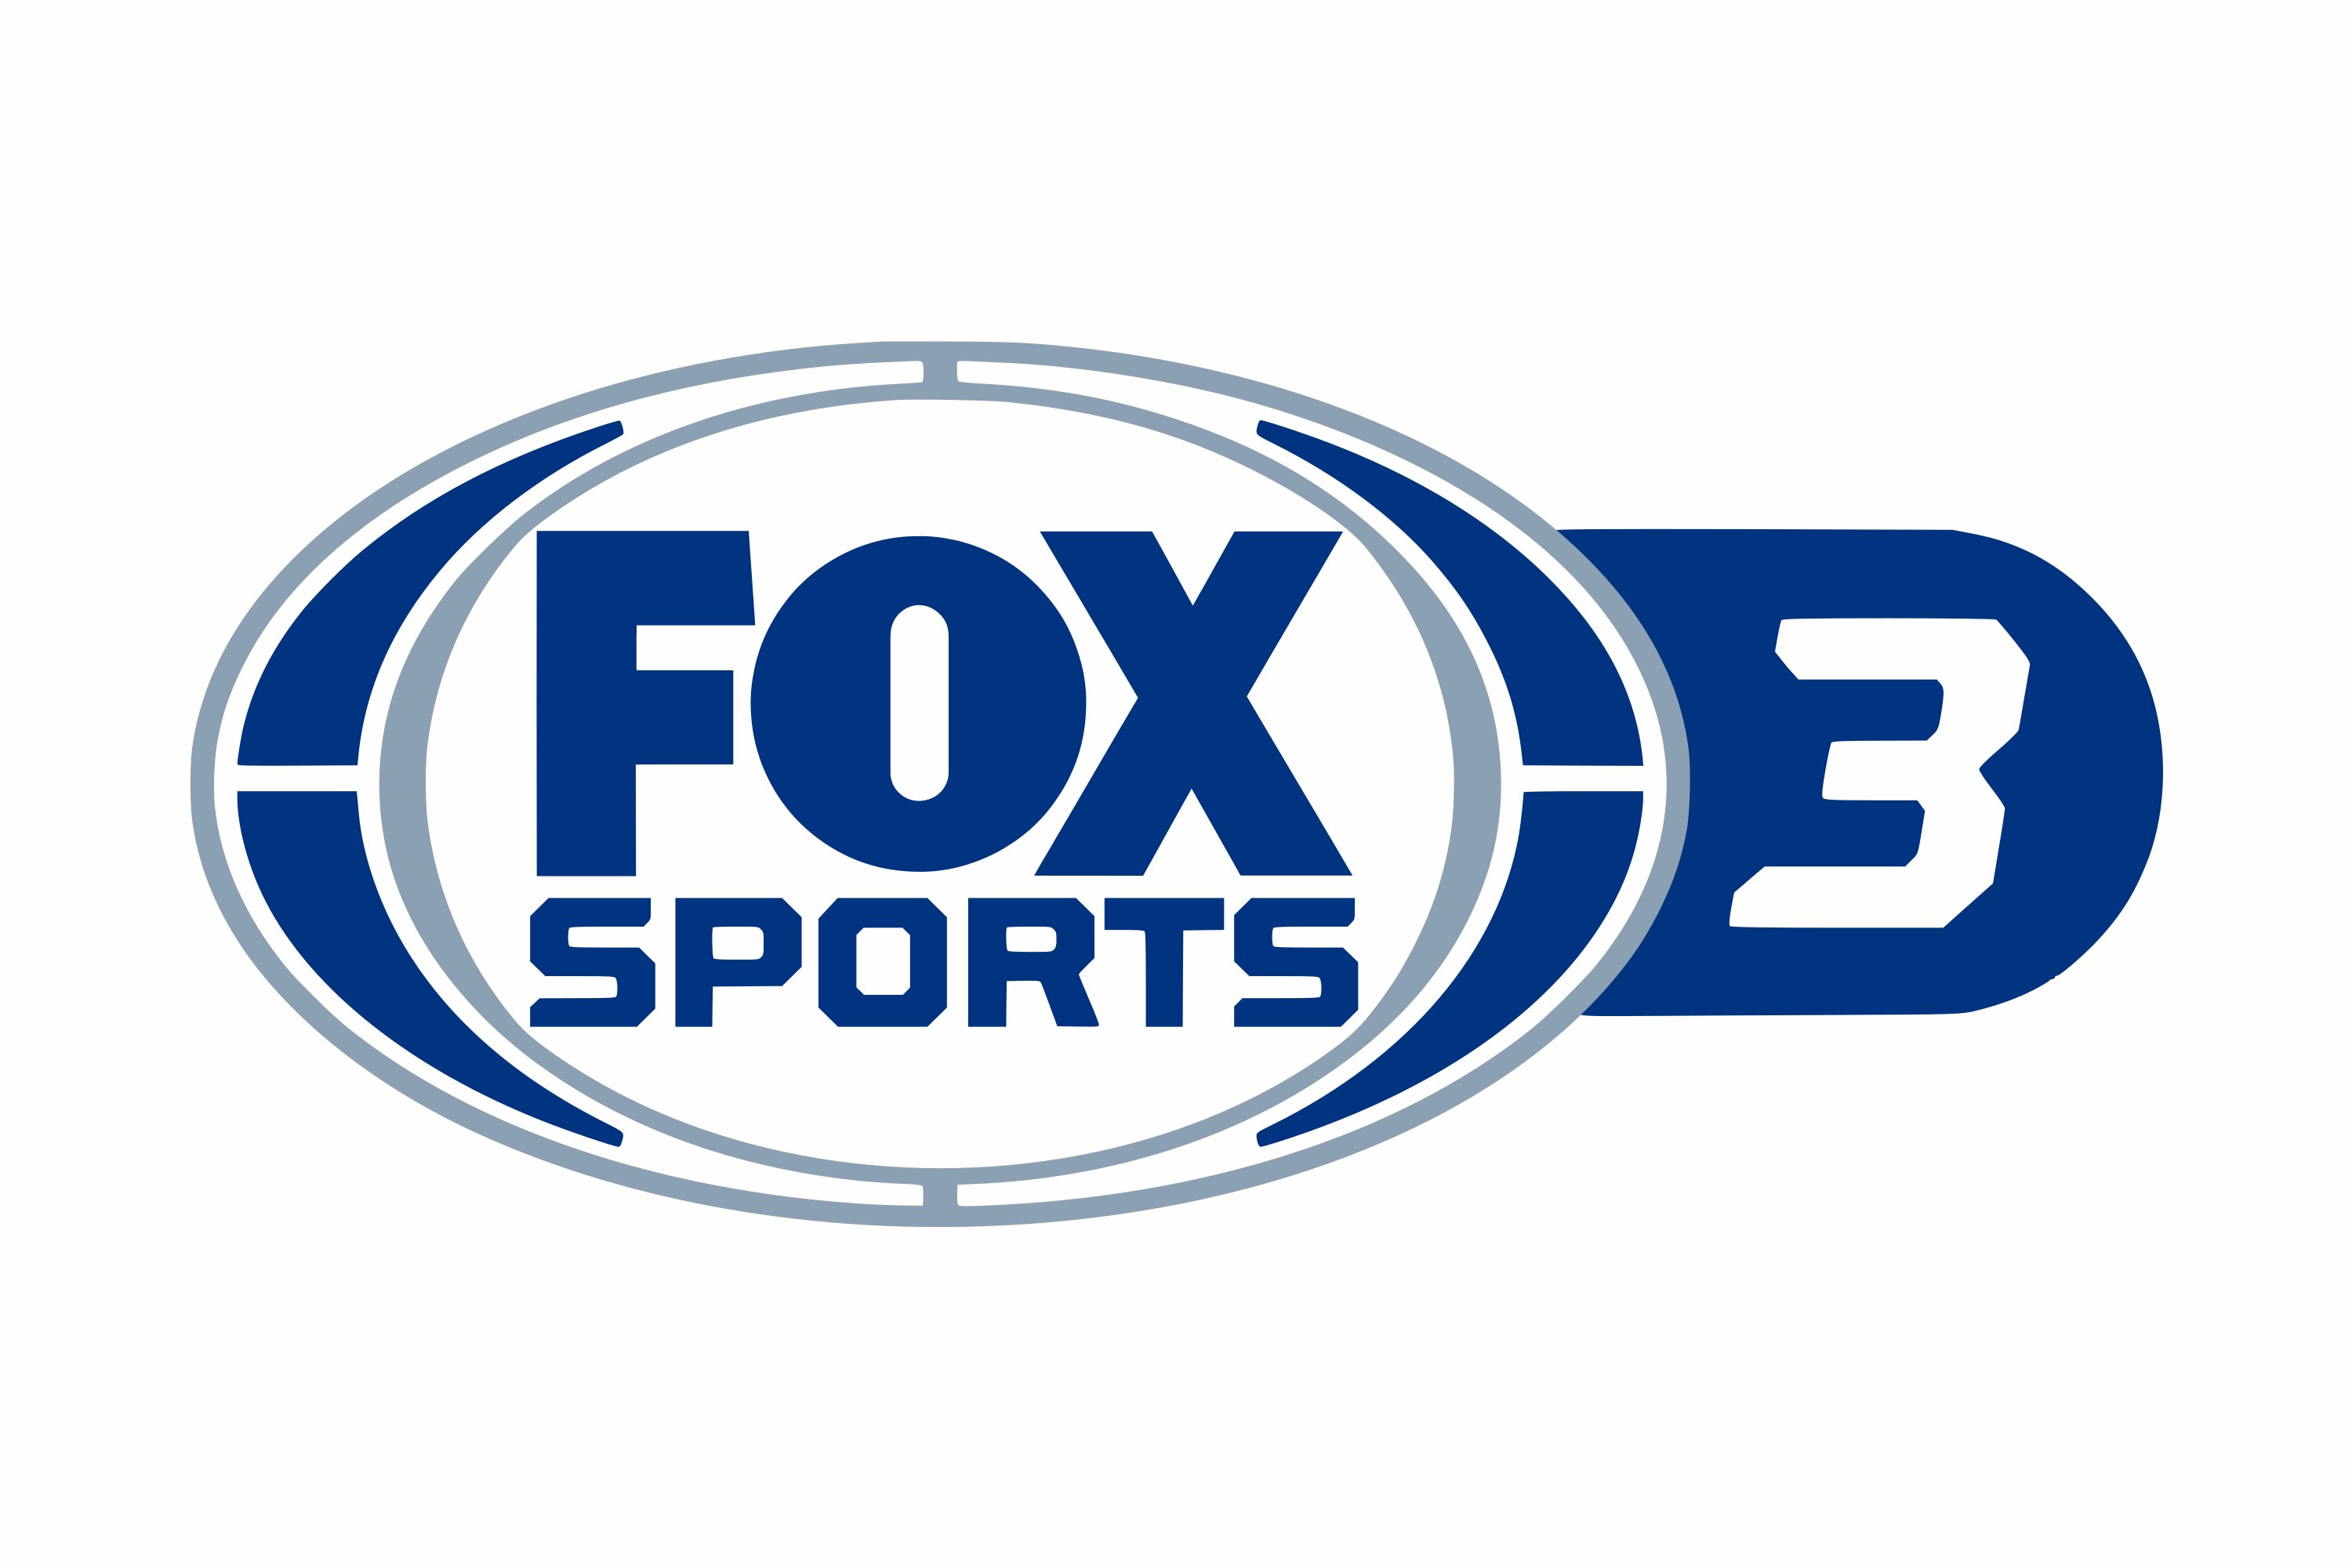 3 sport 2 live. Фокс спорт. Лого Senata Sport 2. Fox товарный лейбл. Fox Sports Play.